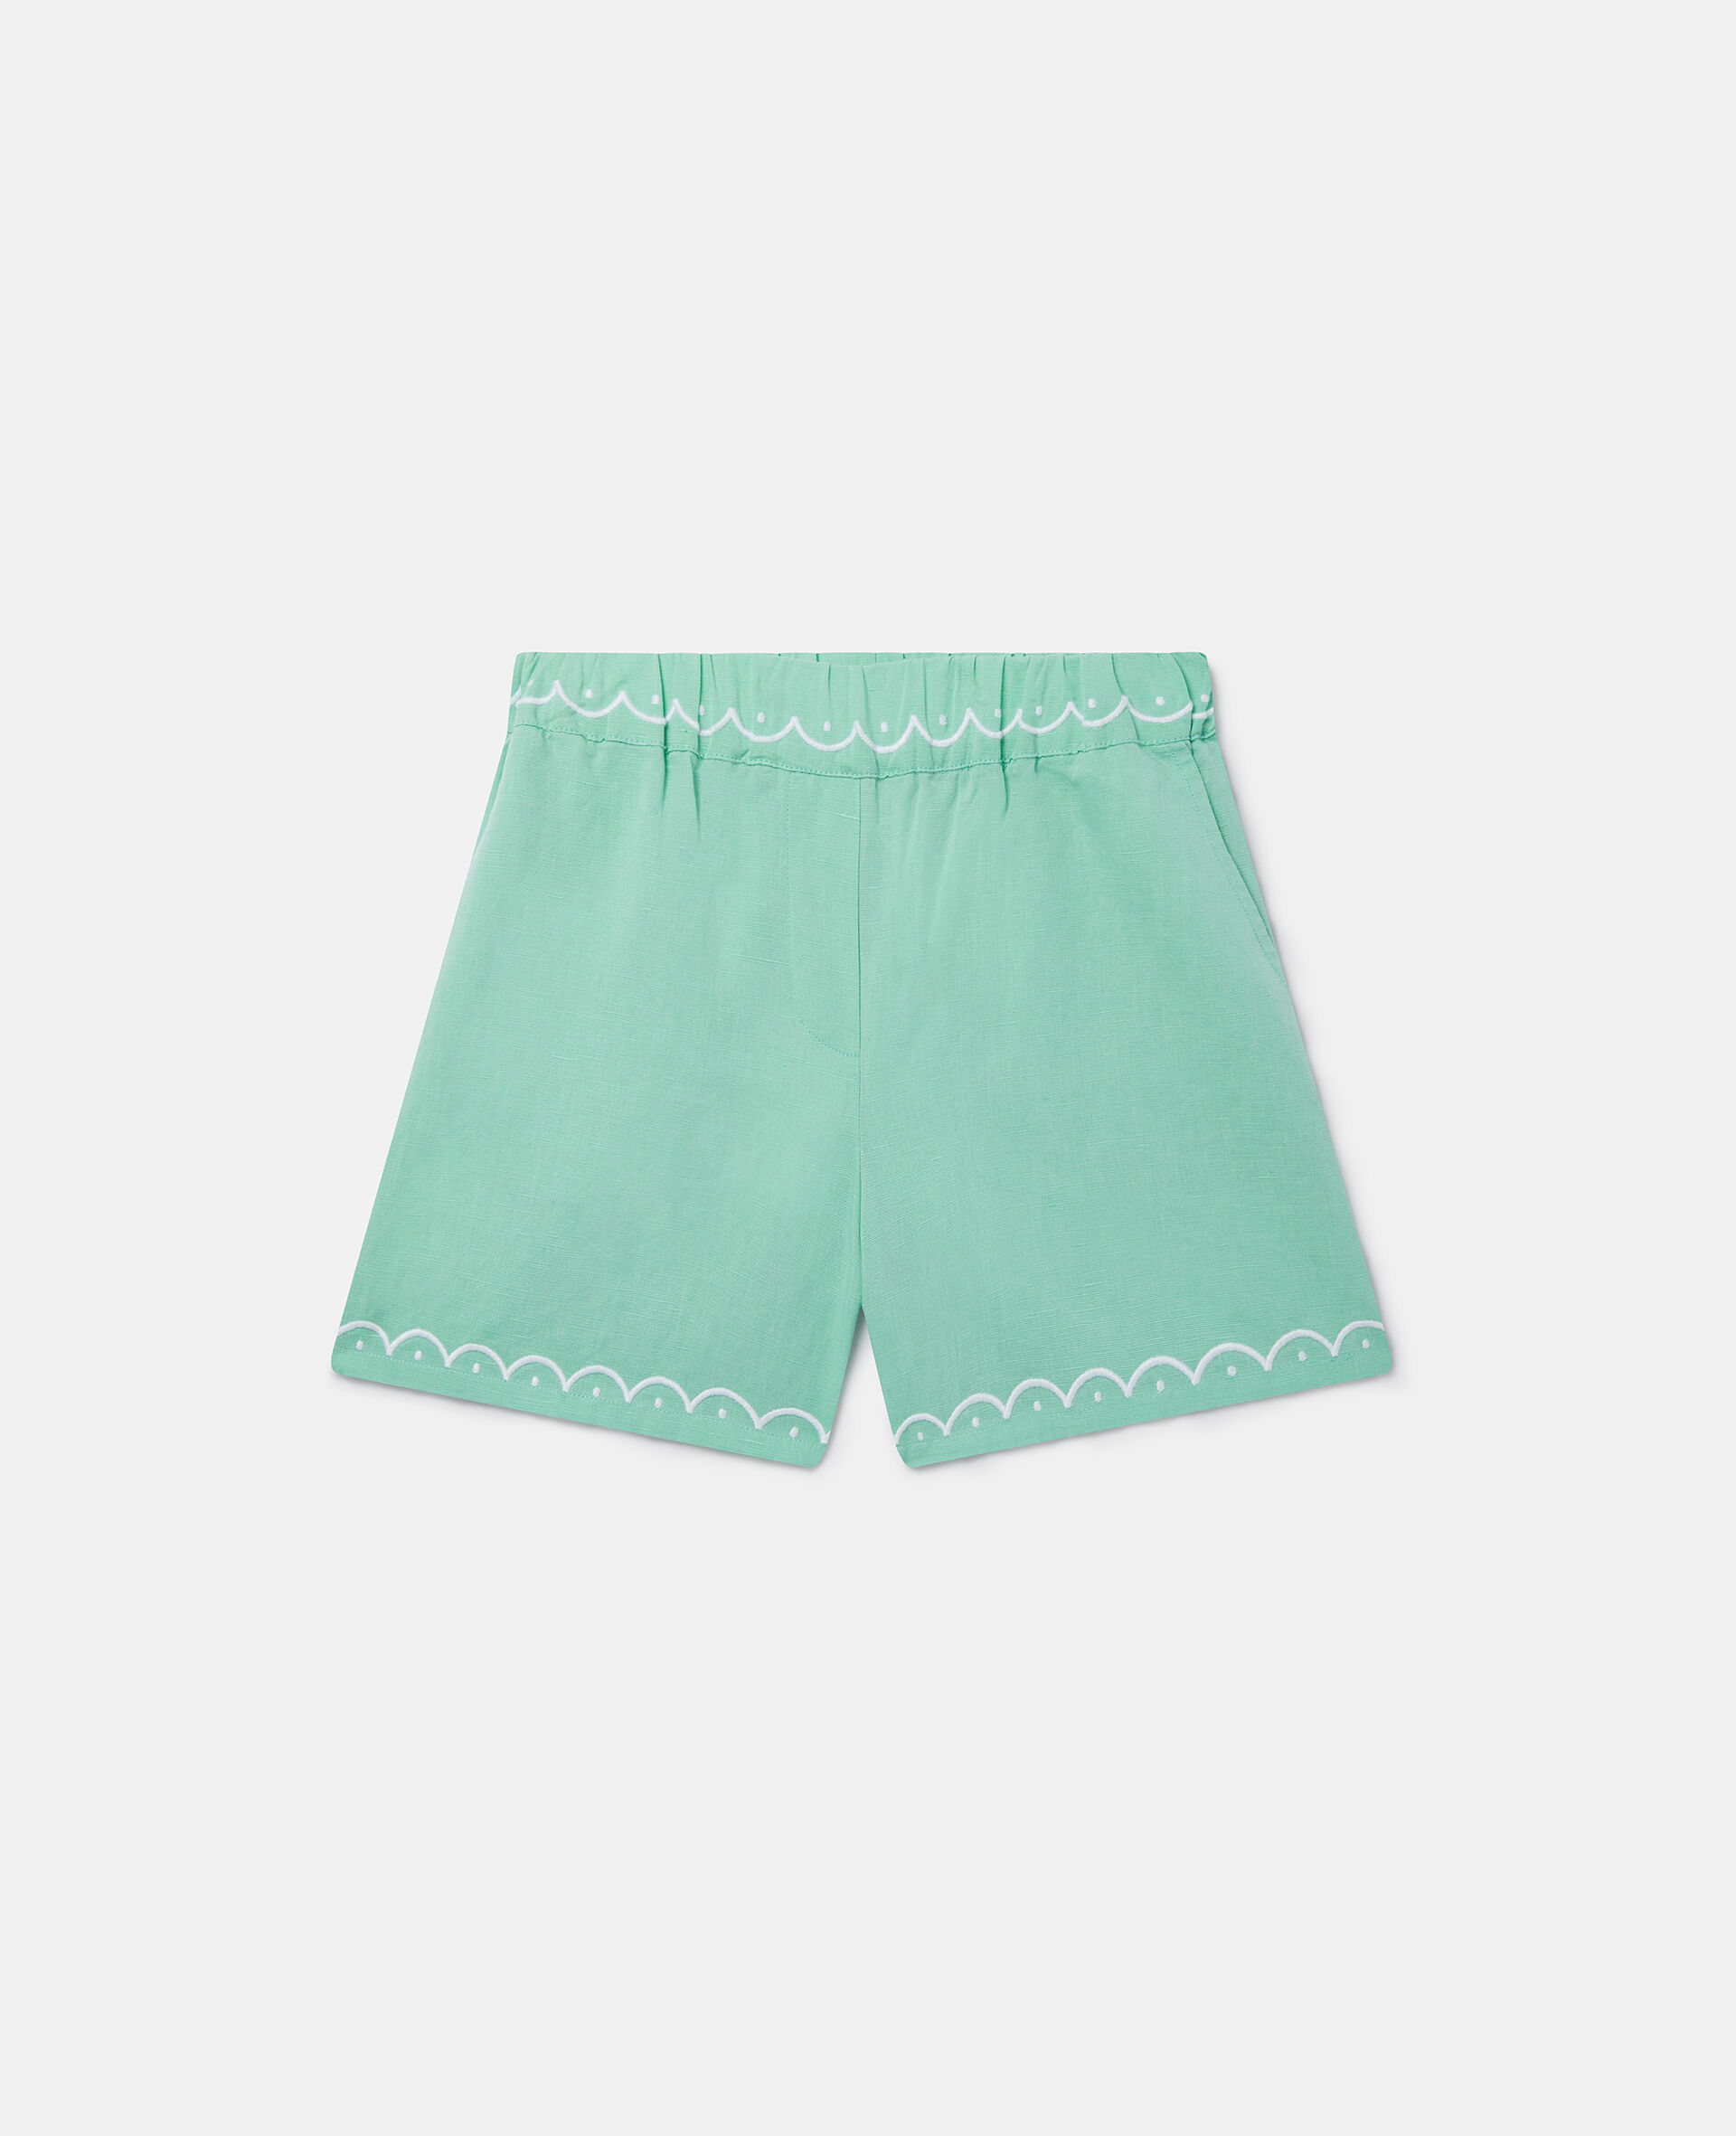 扇形边短裤-绿色-medium